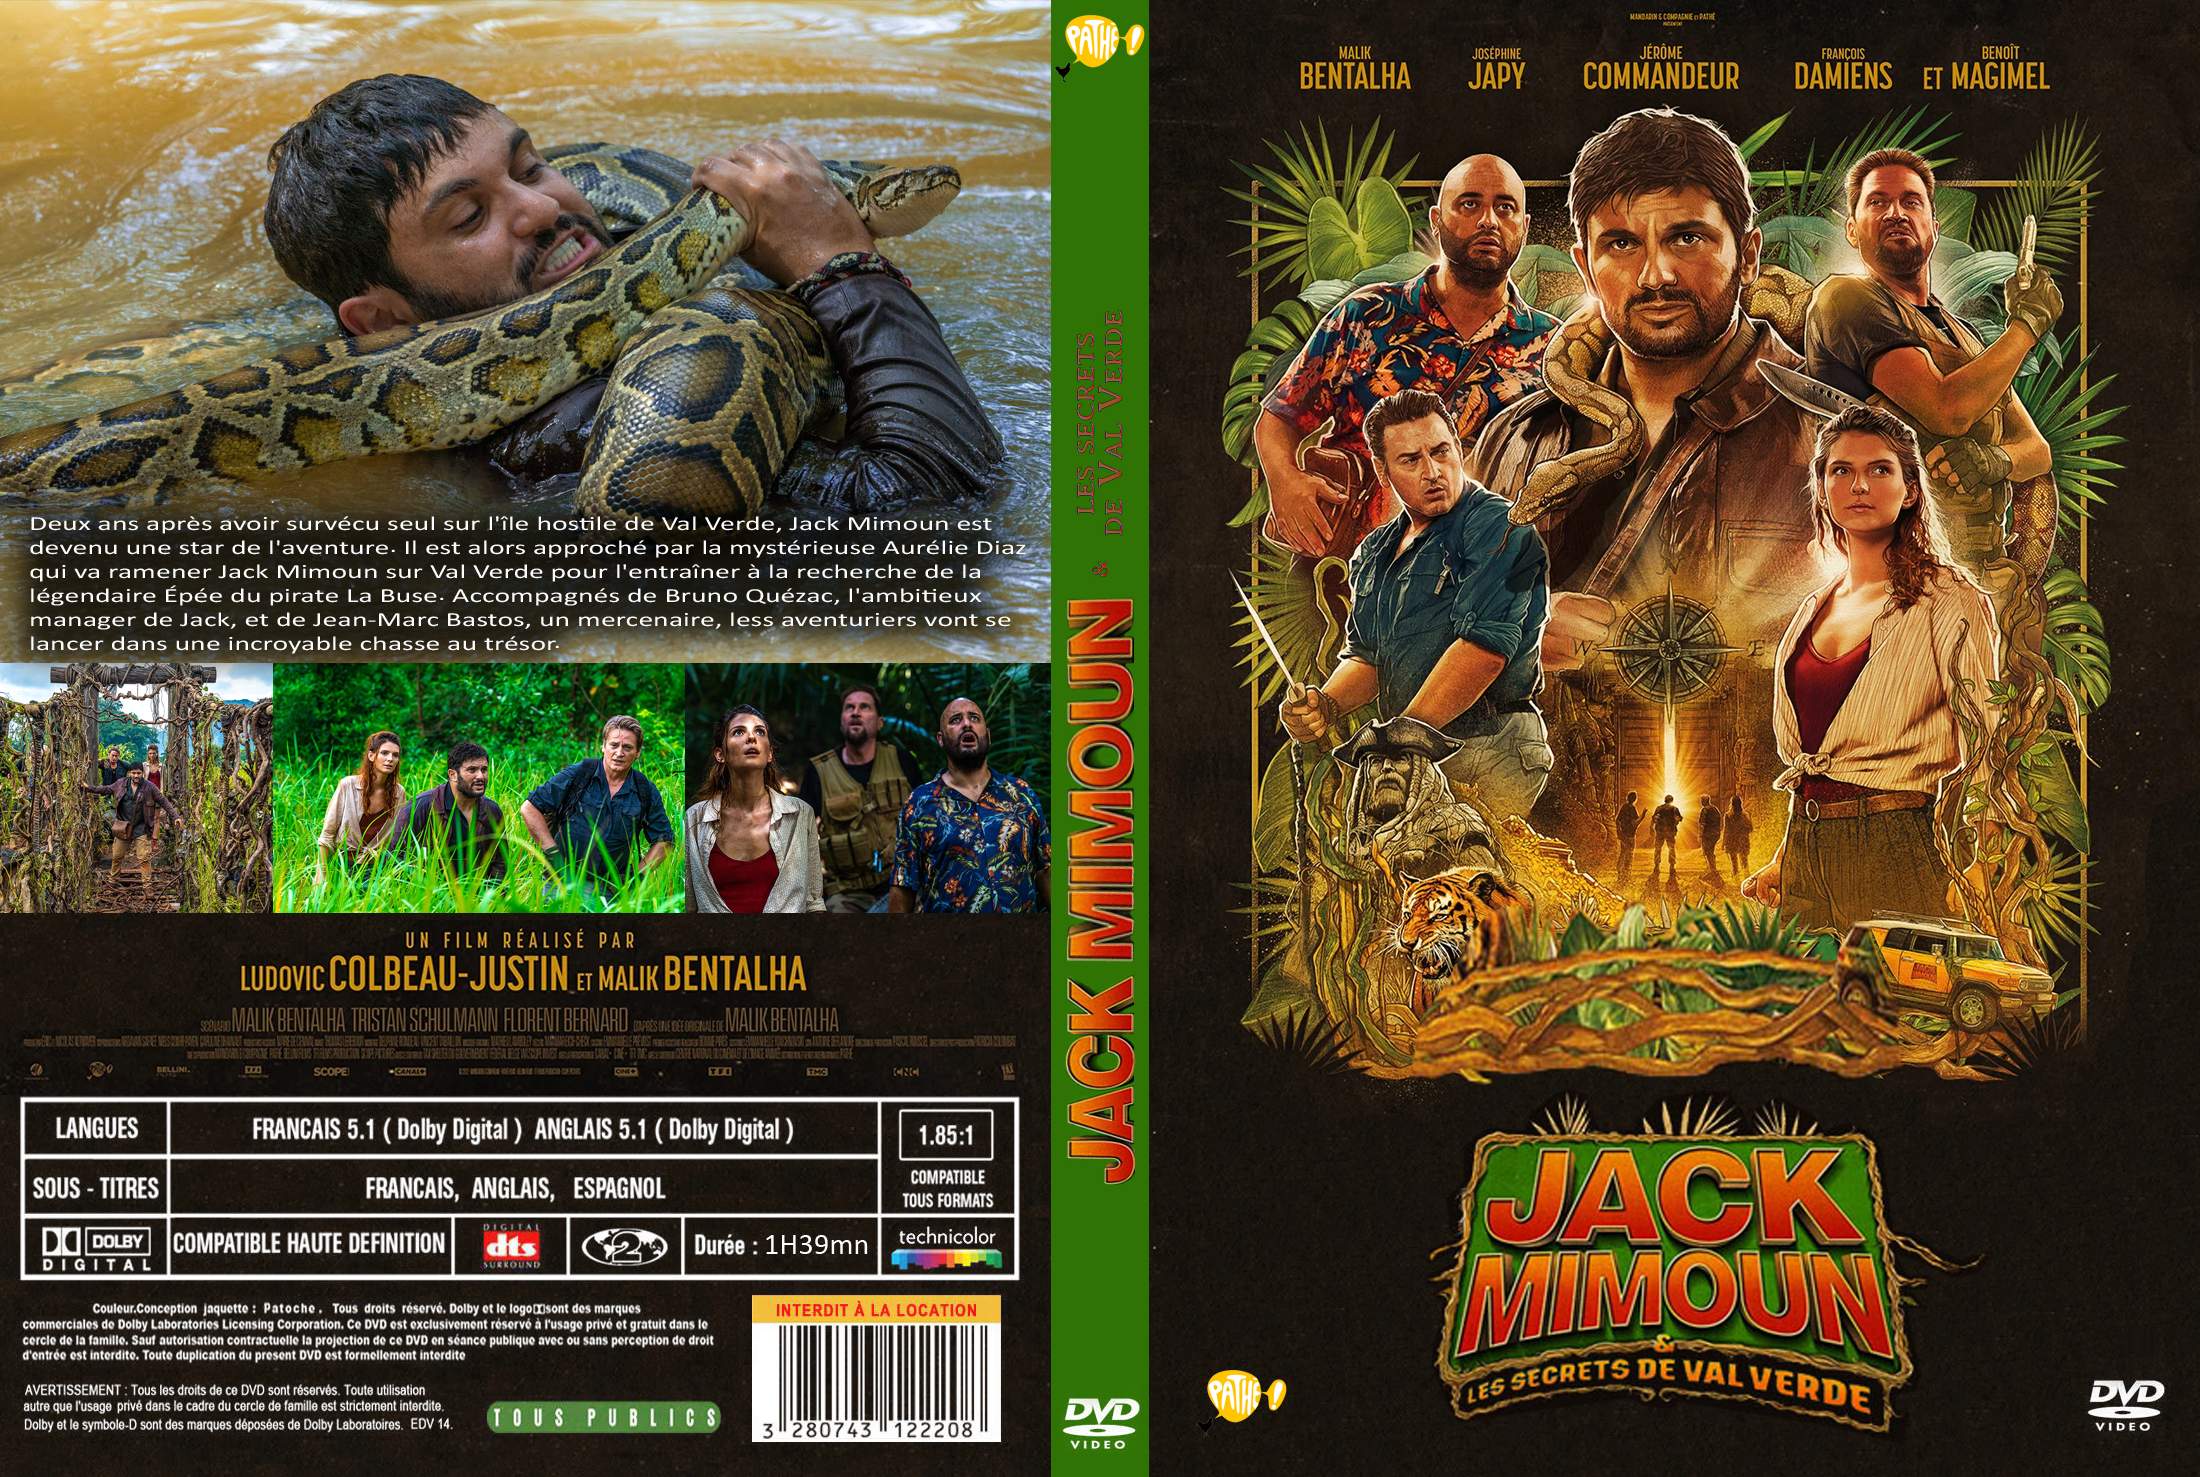 Jaquette DVD jack mimoun et les secrets de val verde custom